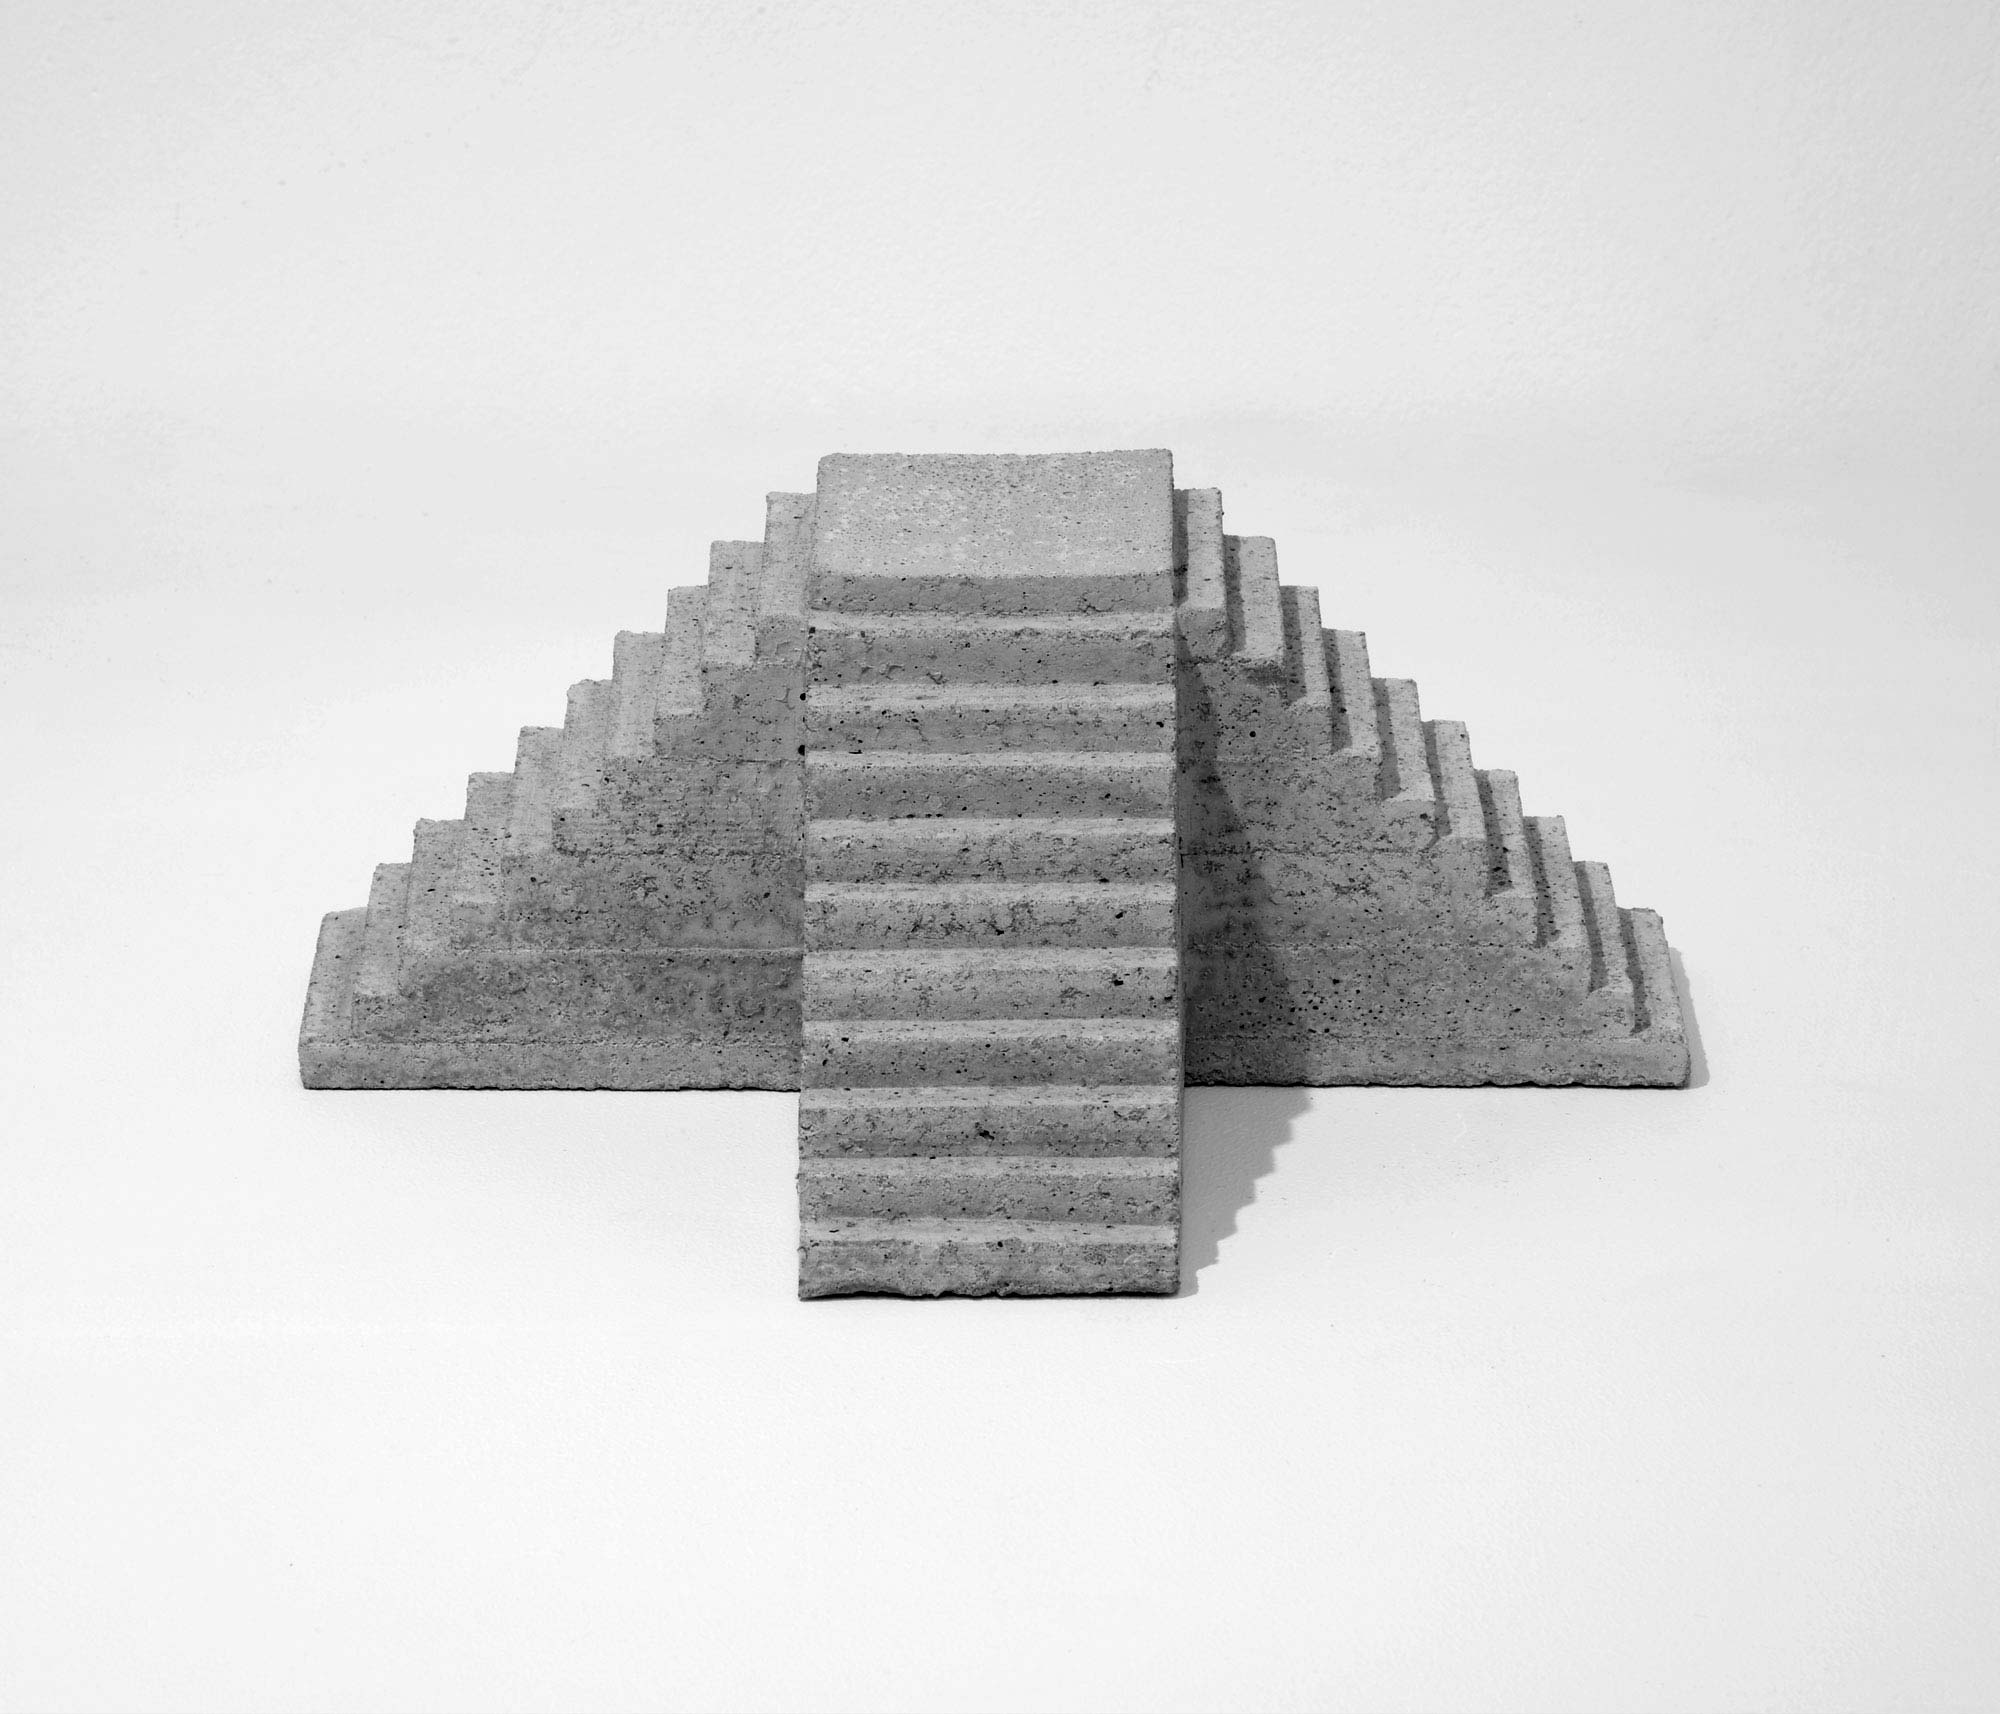 mattia listowski art design objet décoration sculpture béton moulage micro architecture maquette escalier triple édition limitée numérotée signée paris bruxelles 2021